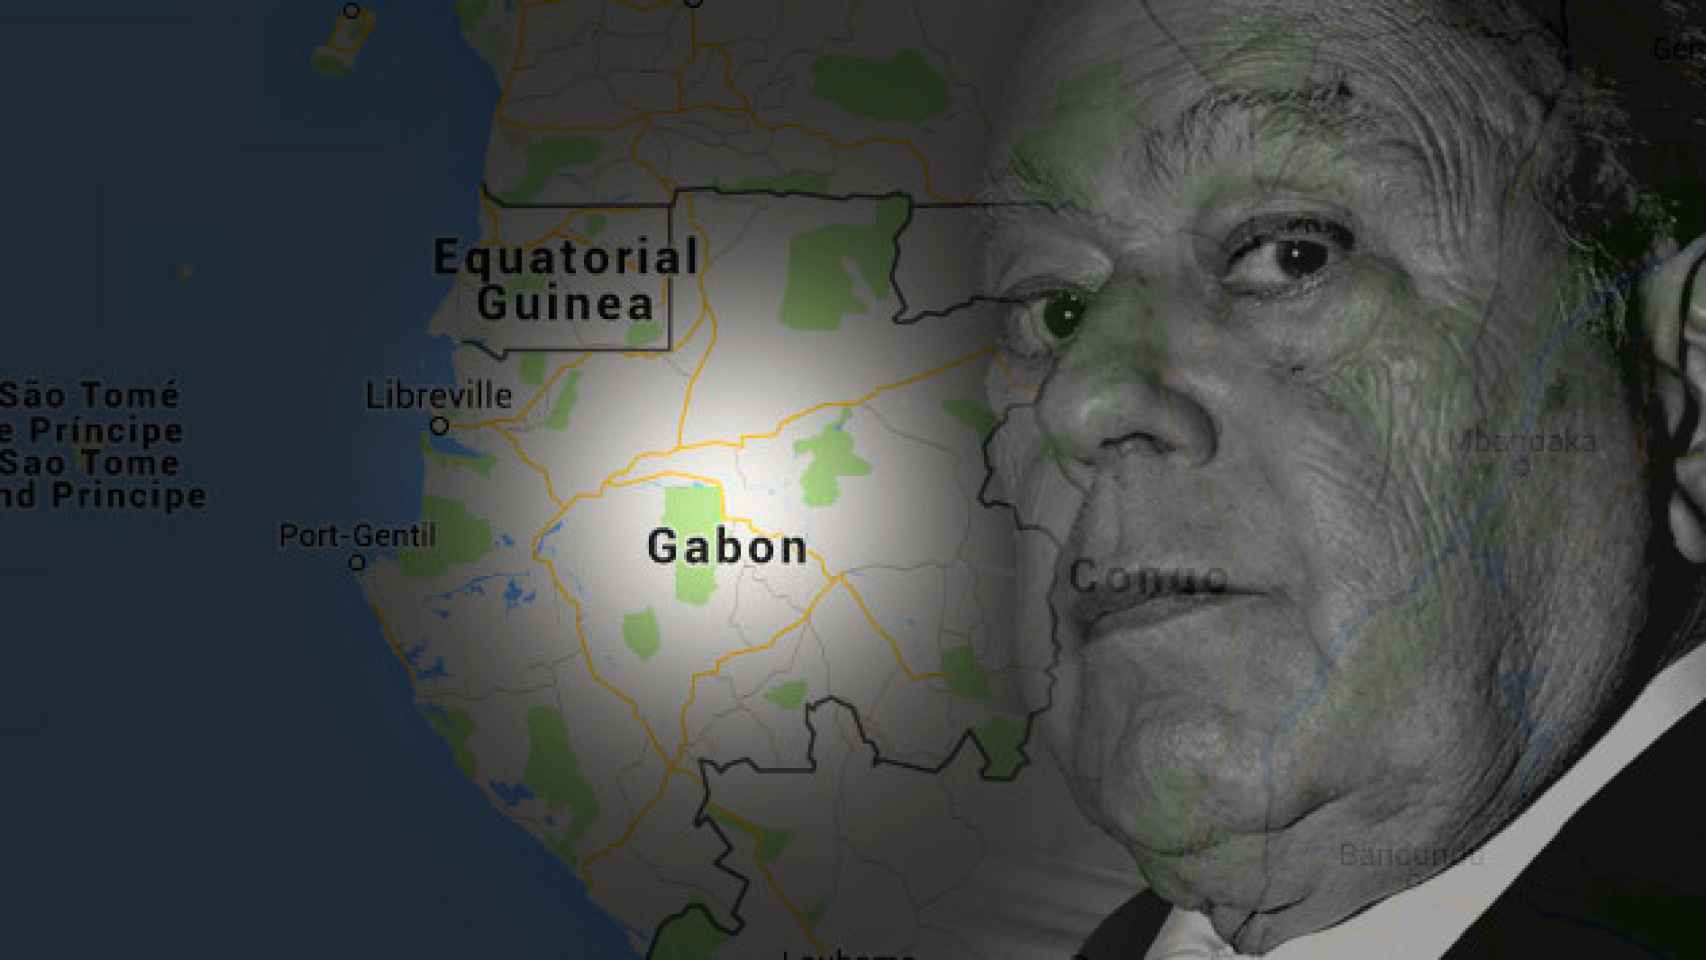 Jordi Pujol y el mapa de Gabón en África / CG